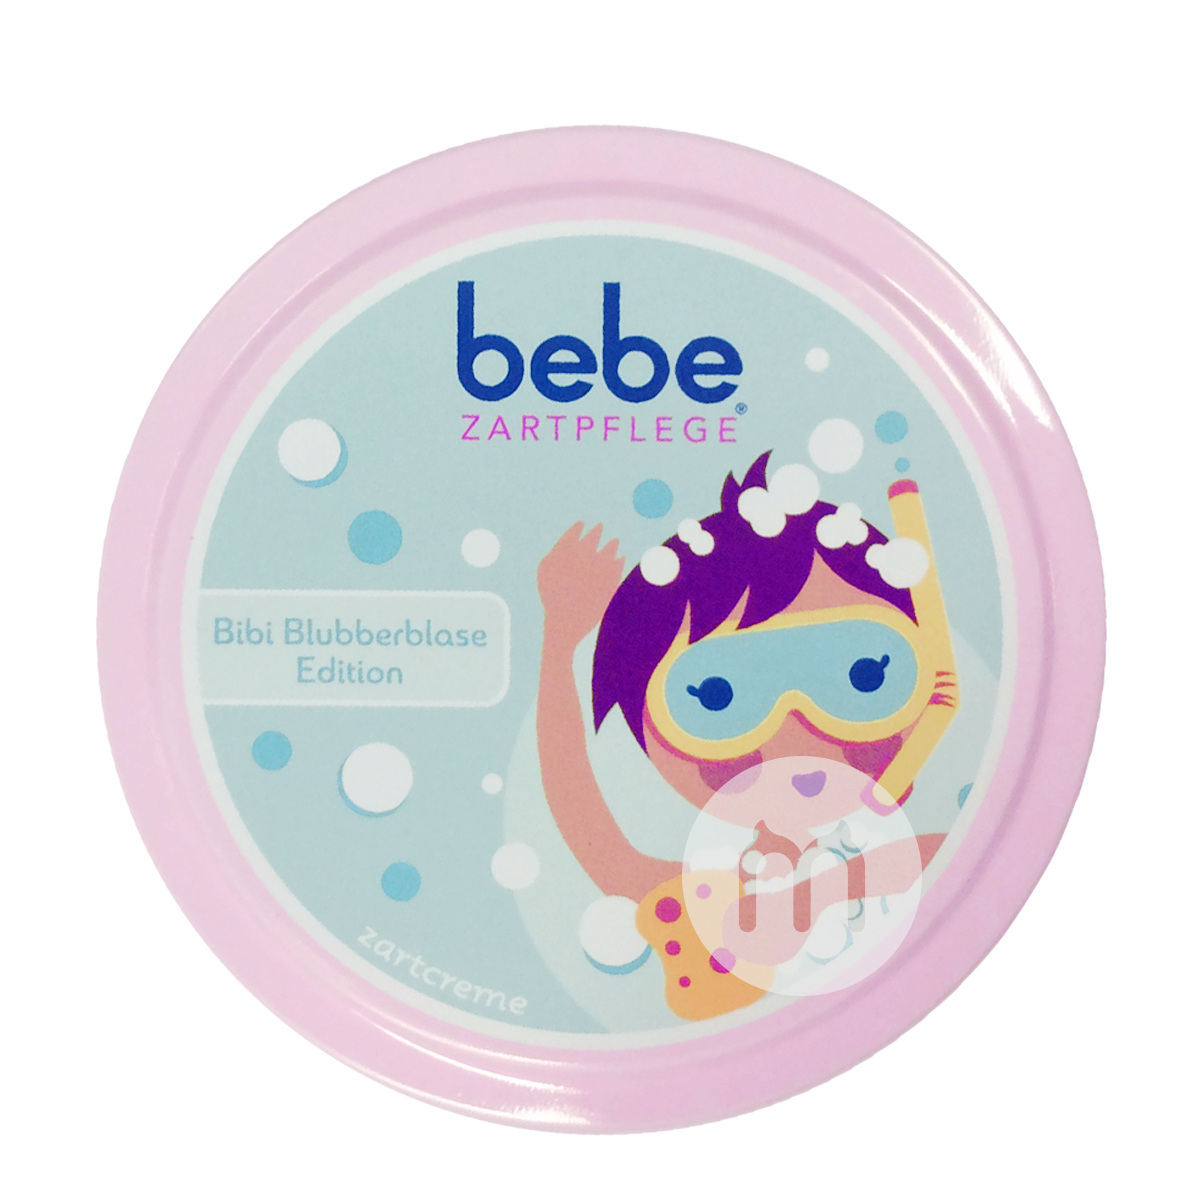 Bebe German Baby Soothing Cream